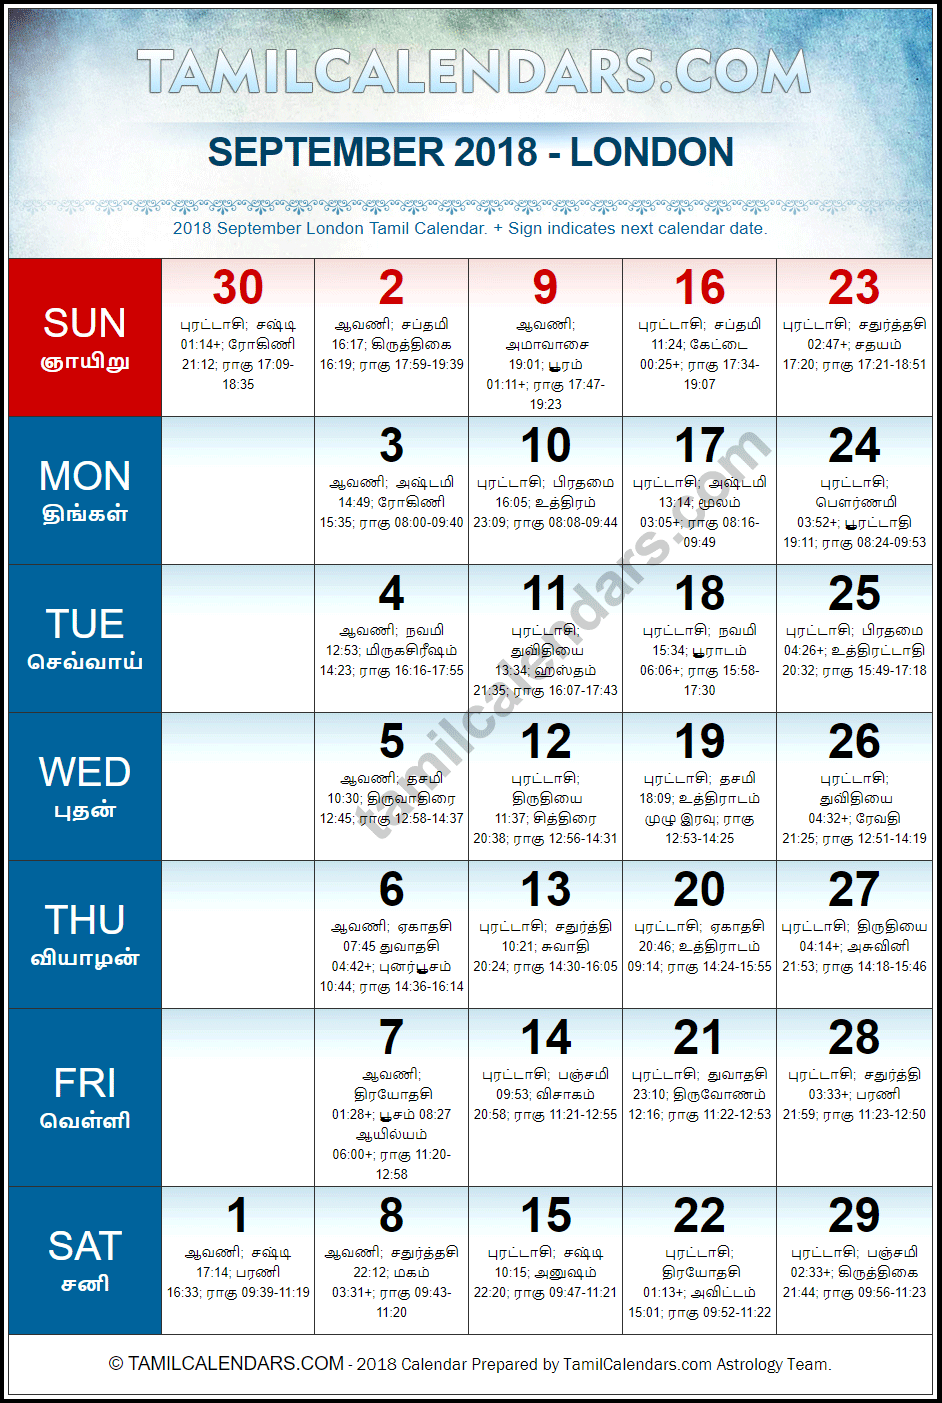 September 2018 Tamil Calendar for London, UK